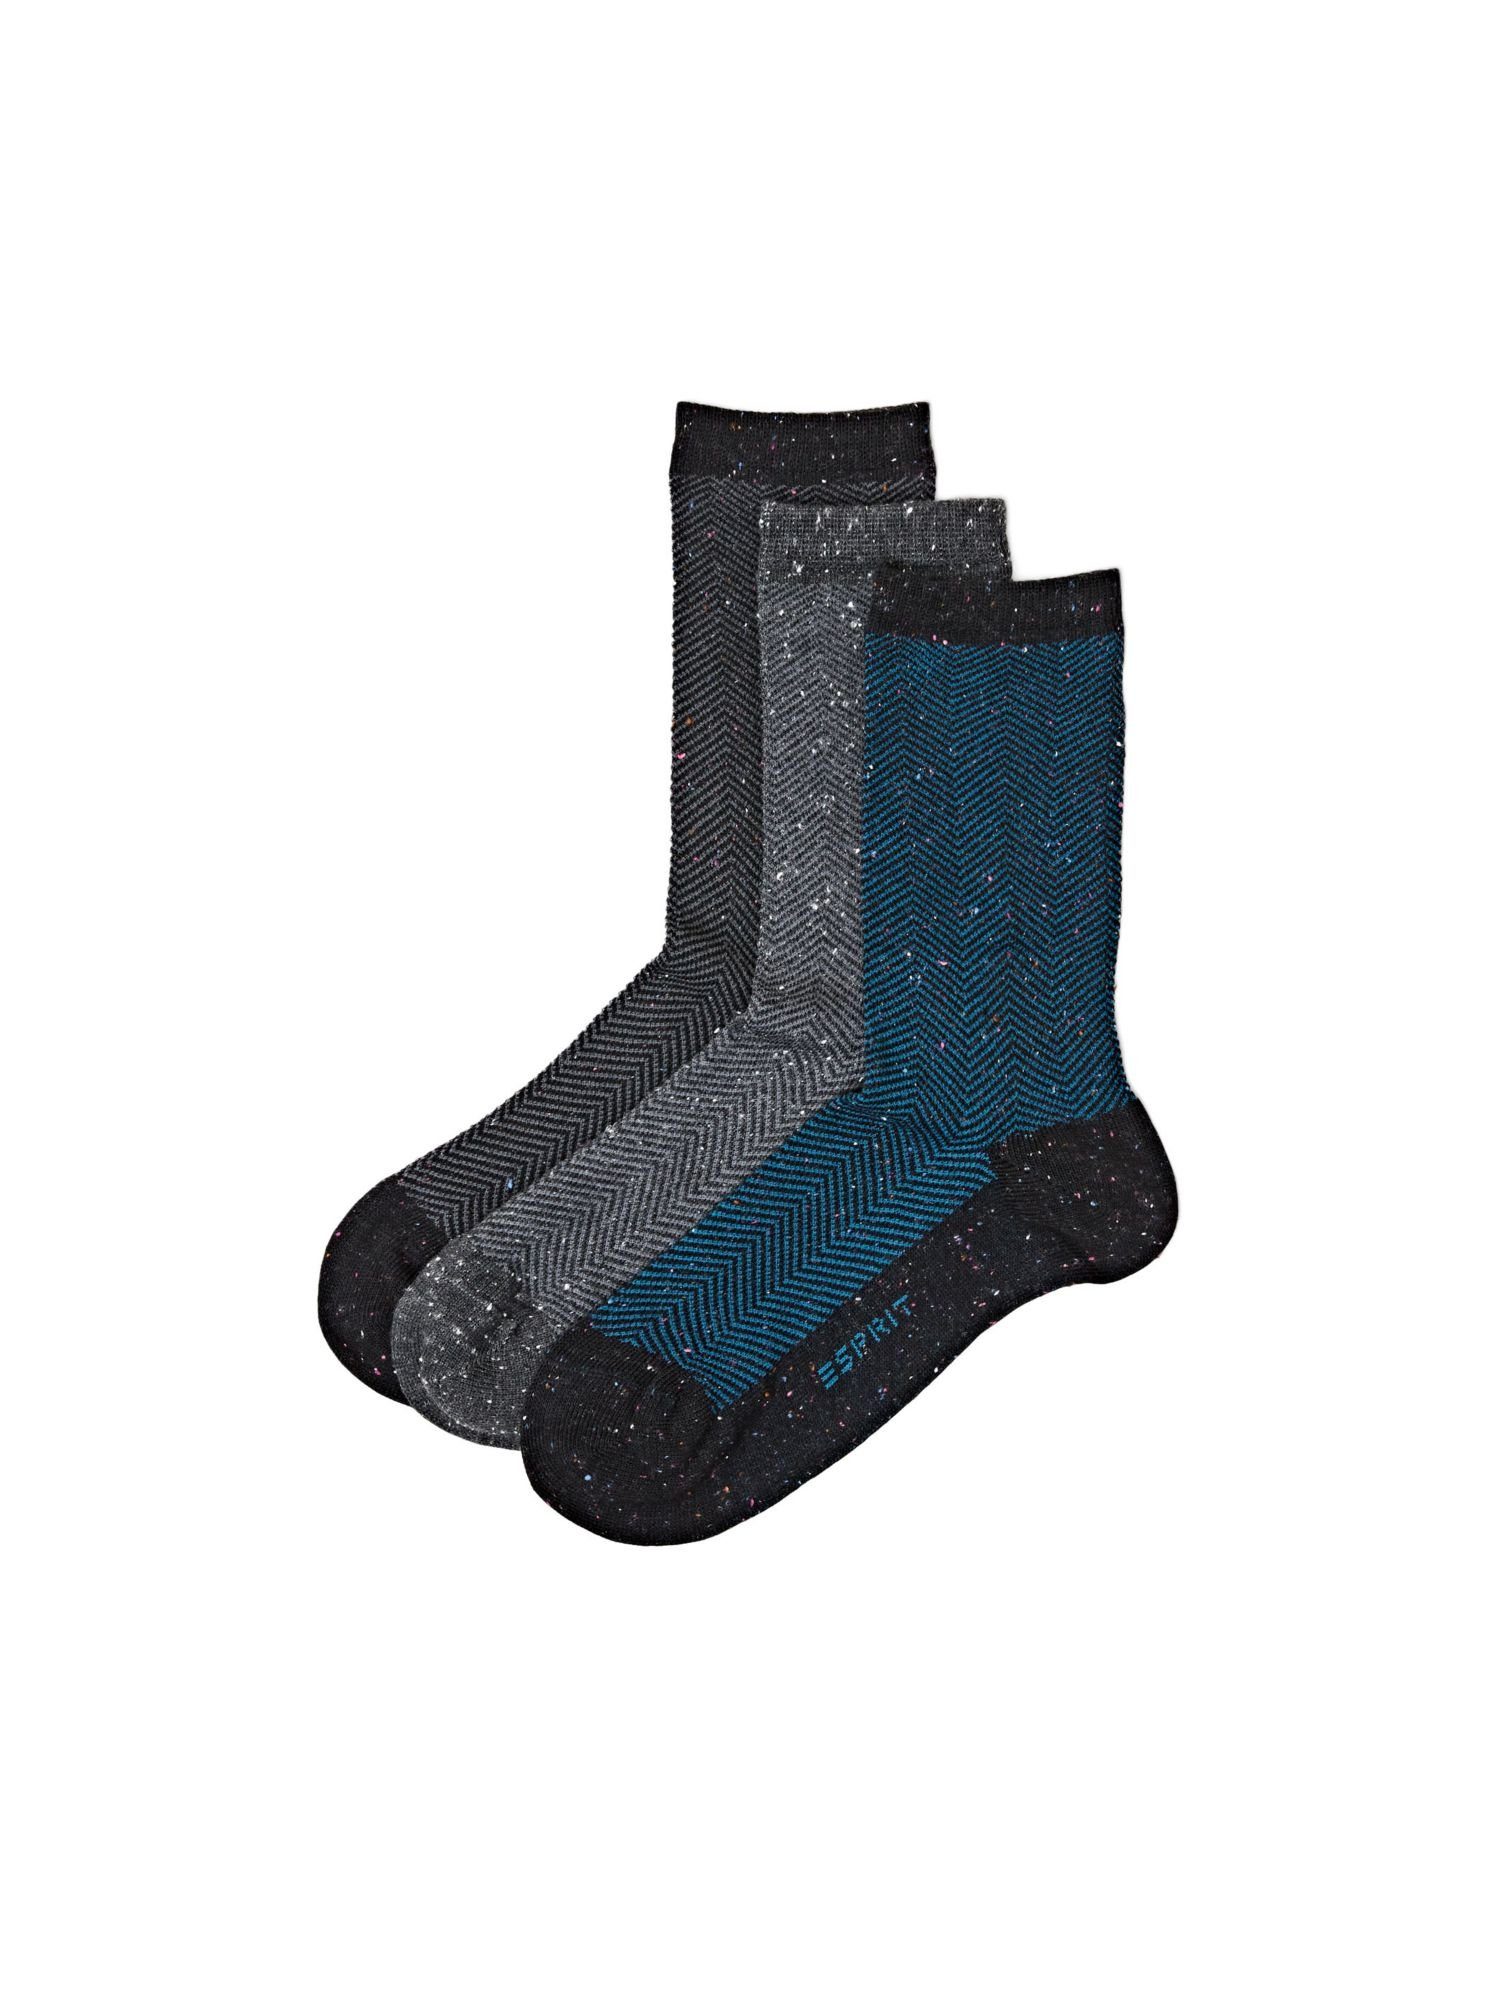 Esprit Socken 3er-Pack Socken mit Fischgratmuster DARK GREY/DARK BLUE | Lange Socken